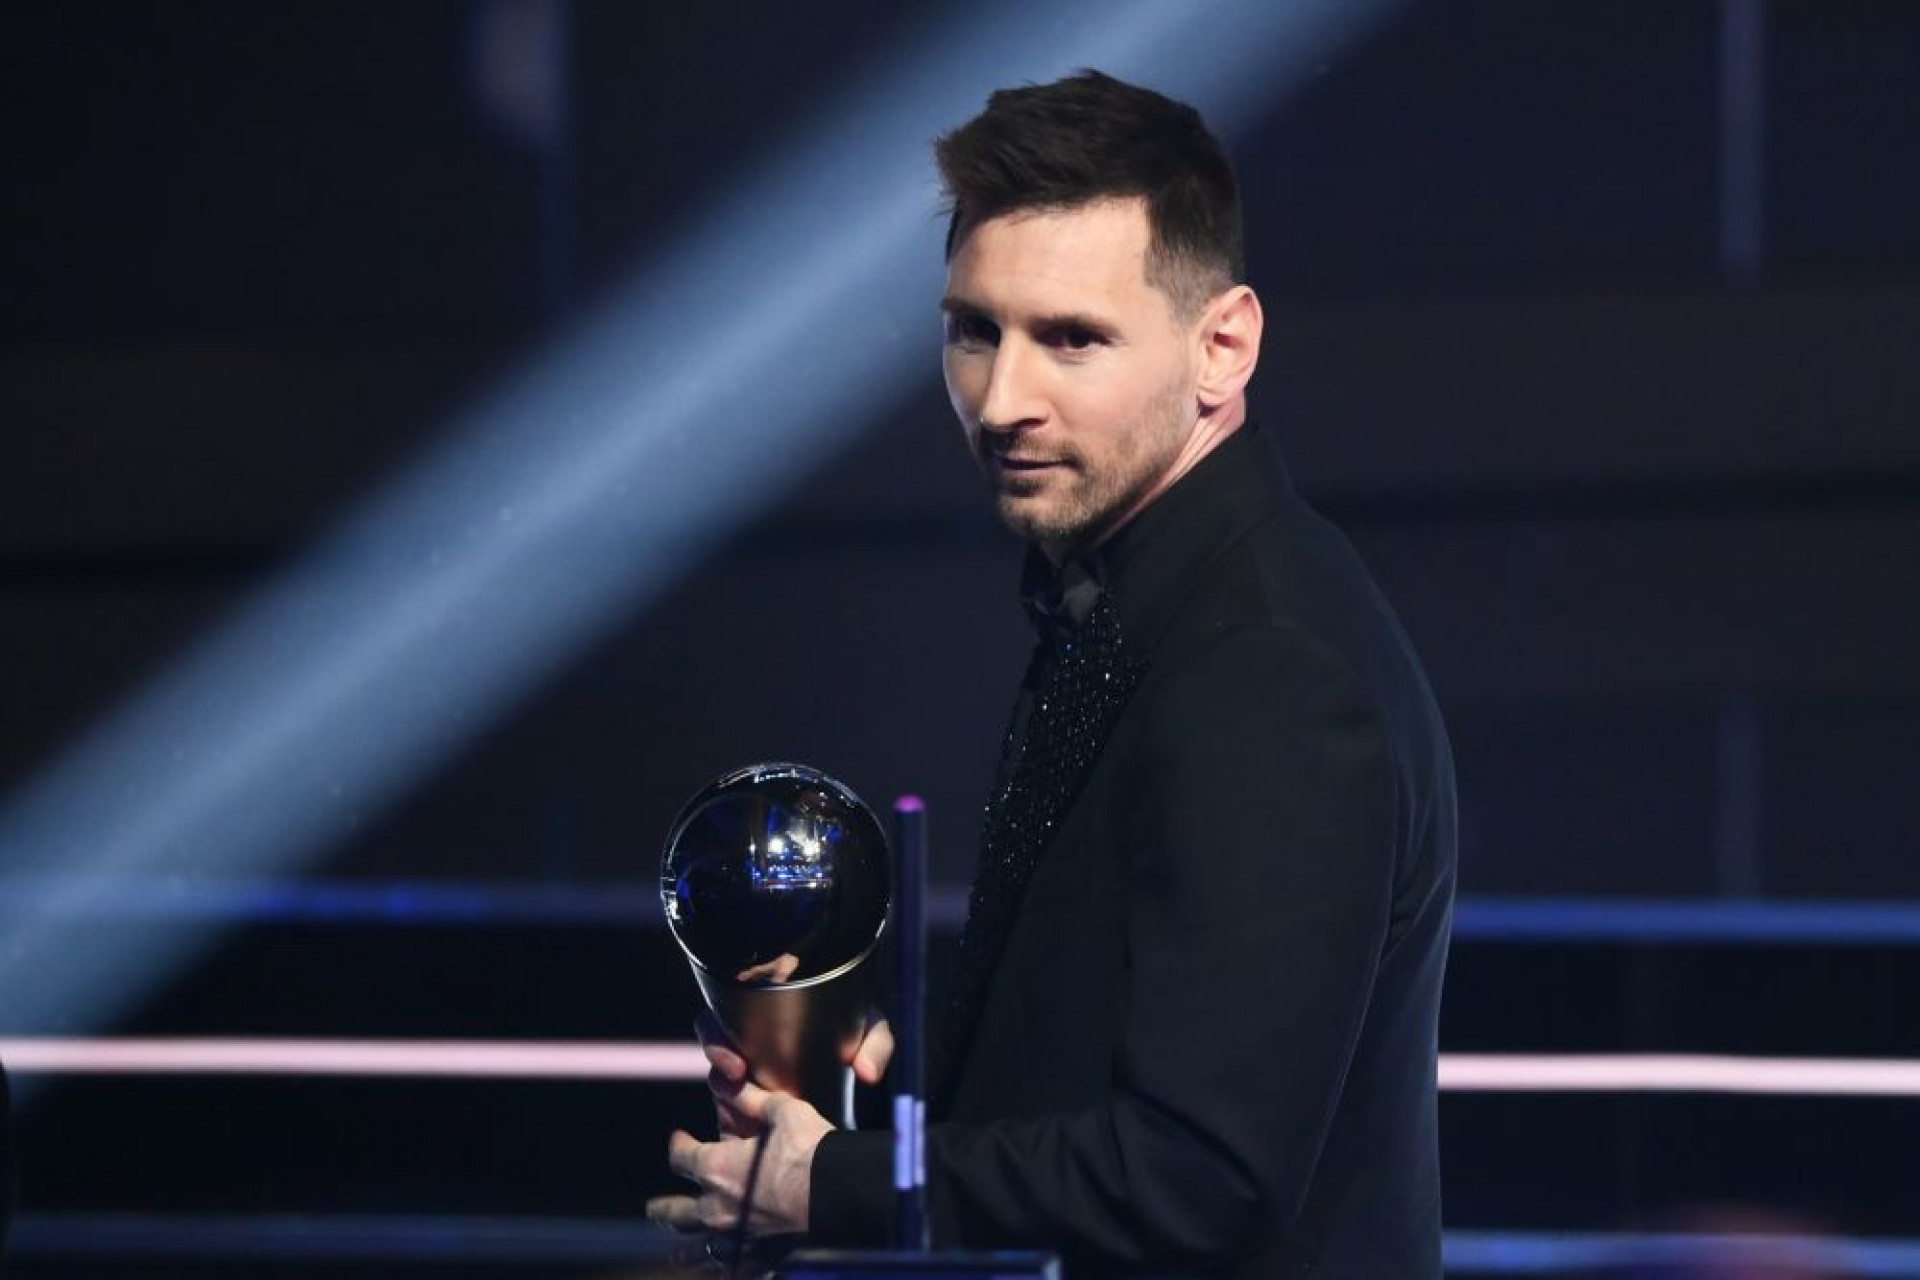 The Best 2023: Messi, Haaland e Mbappé disputam o prêmio de melhor jogador